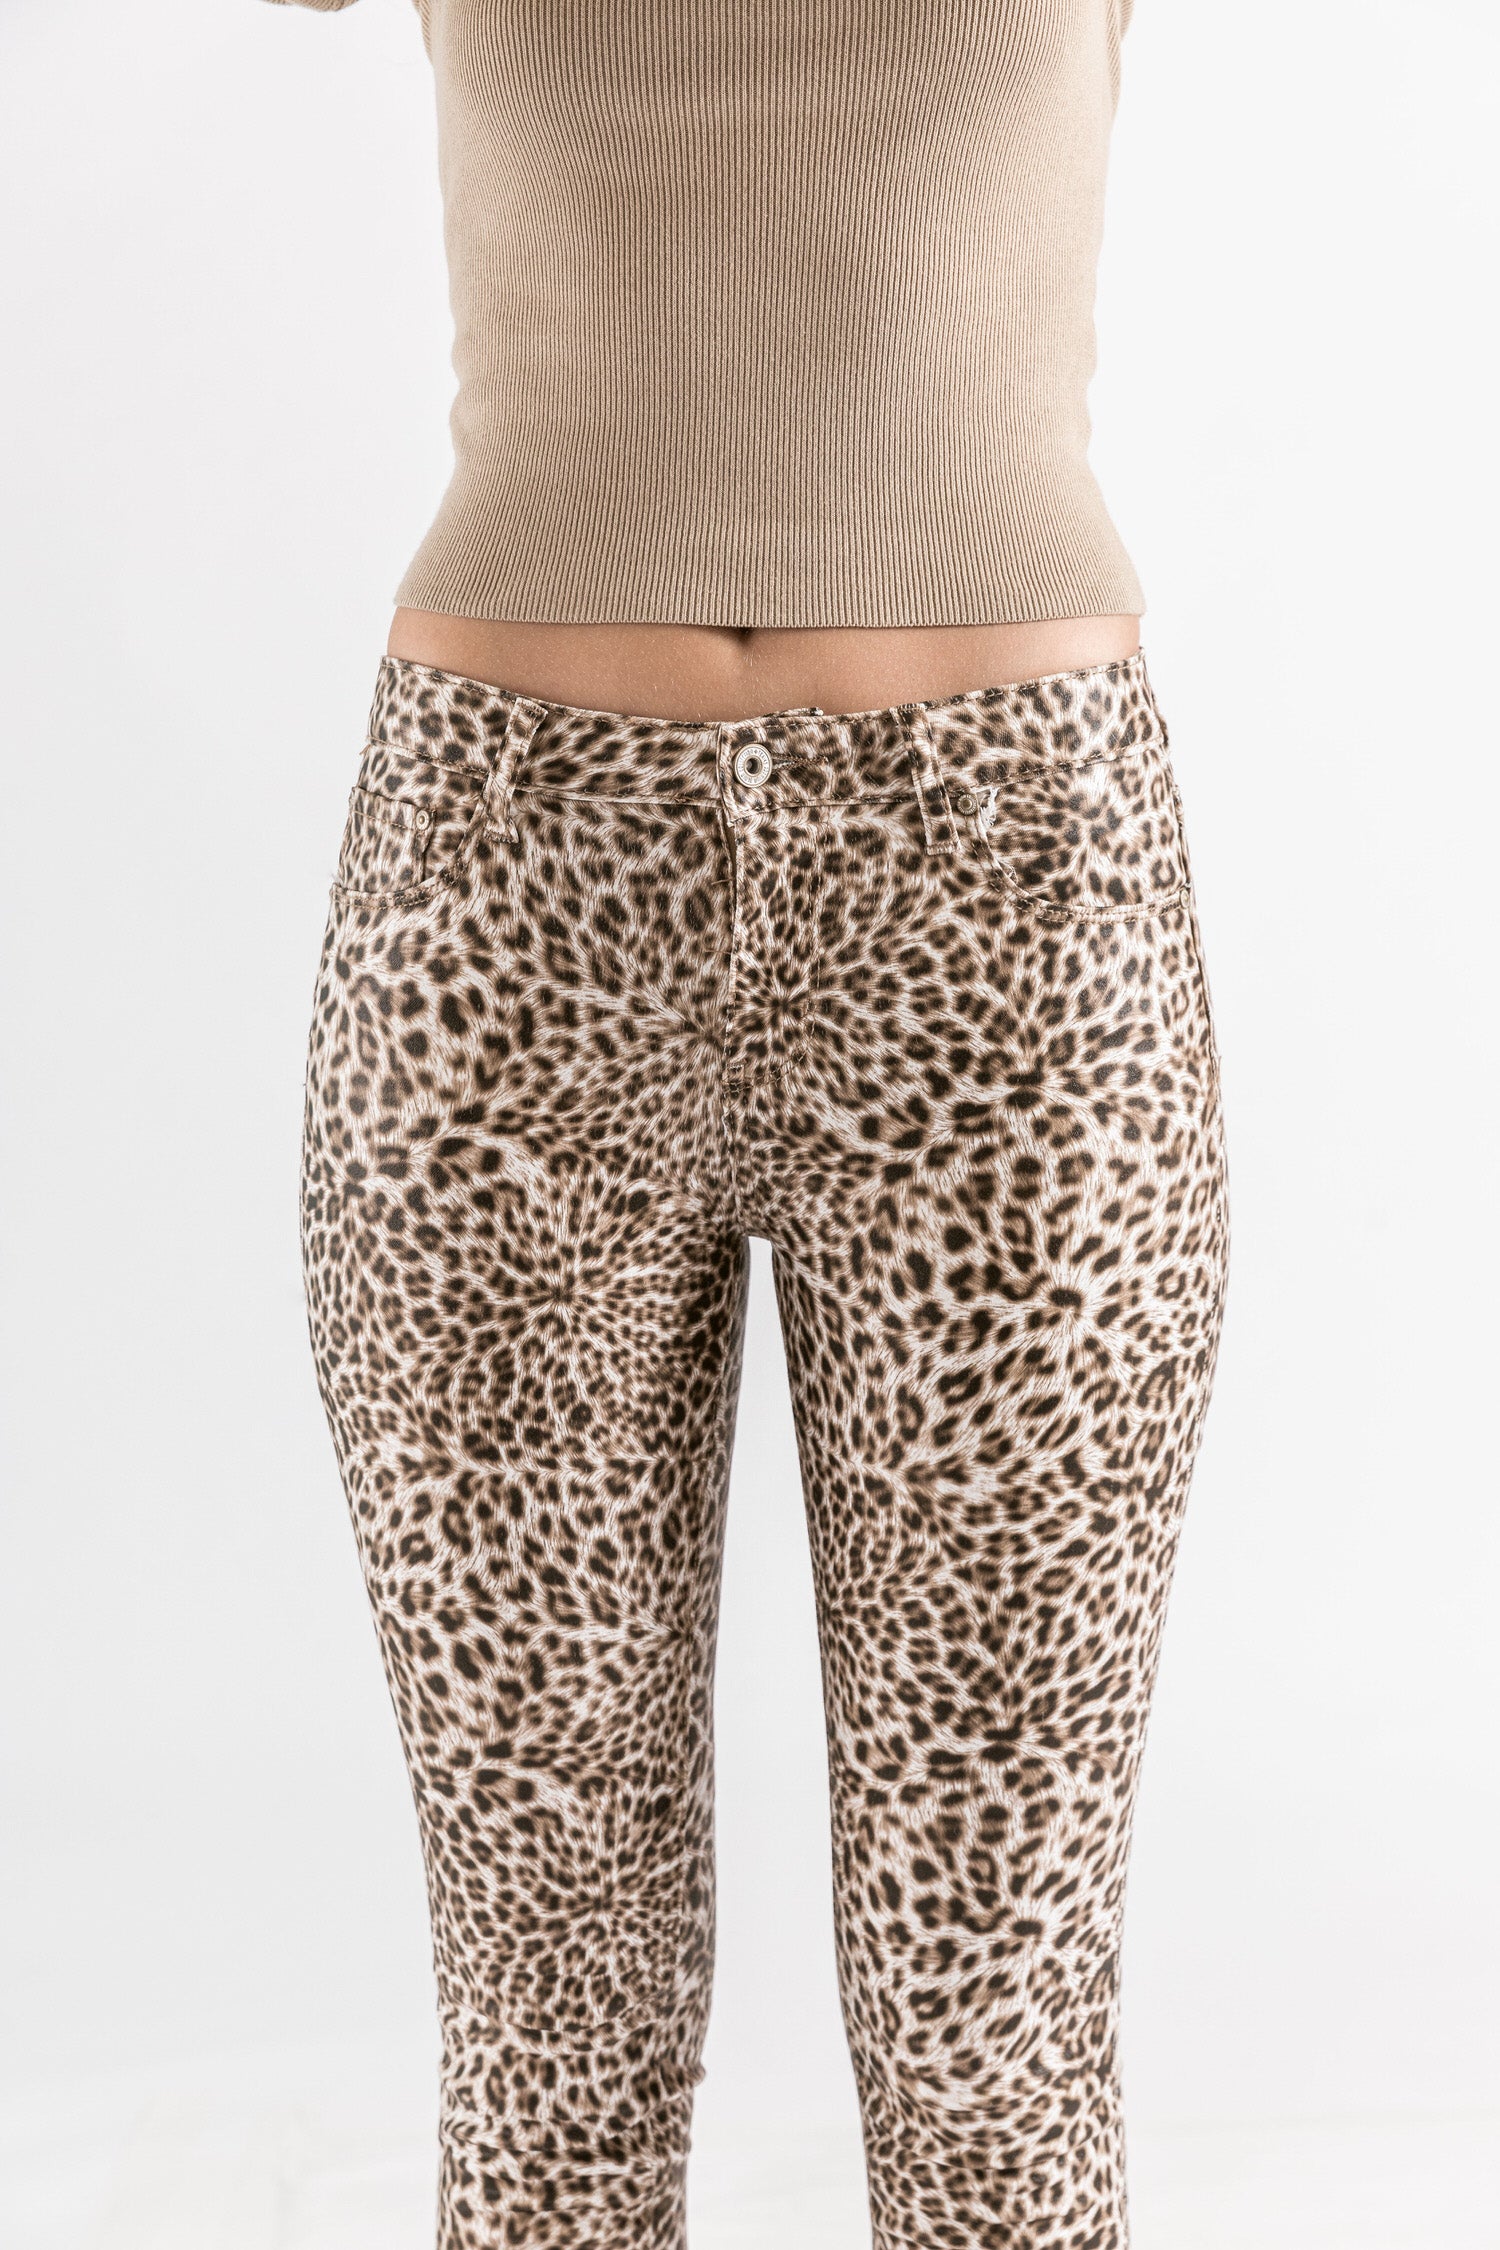 Leopardo - Pantalones recubiertos impresos de Loula